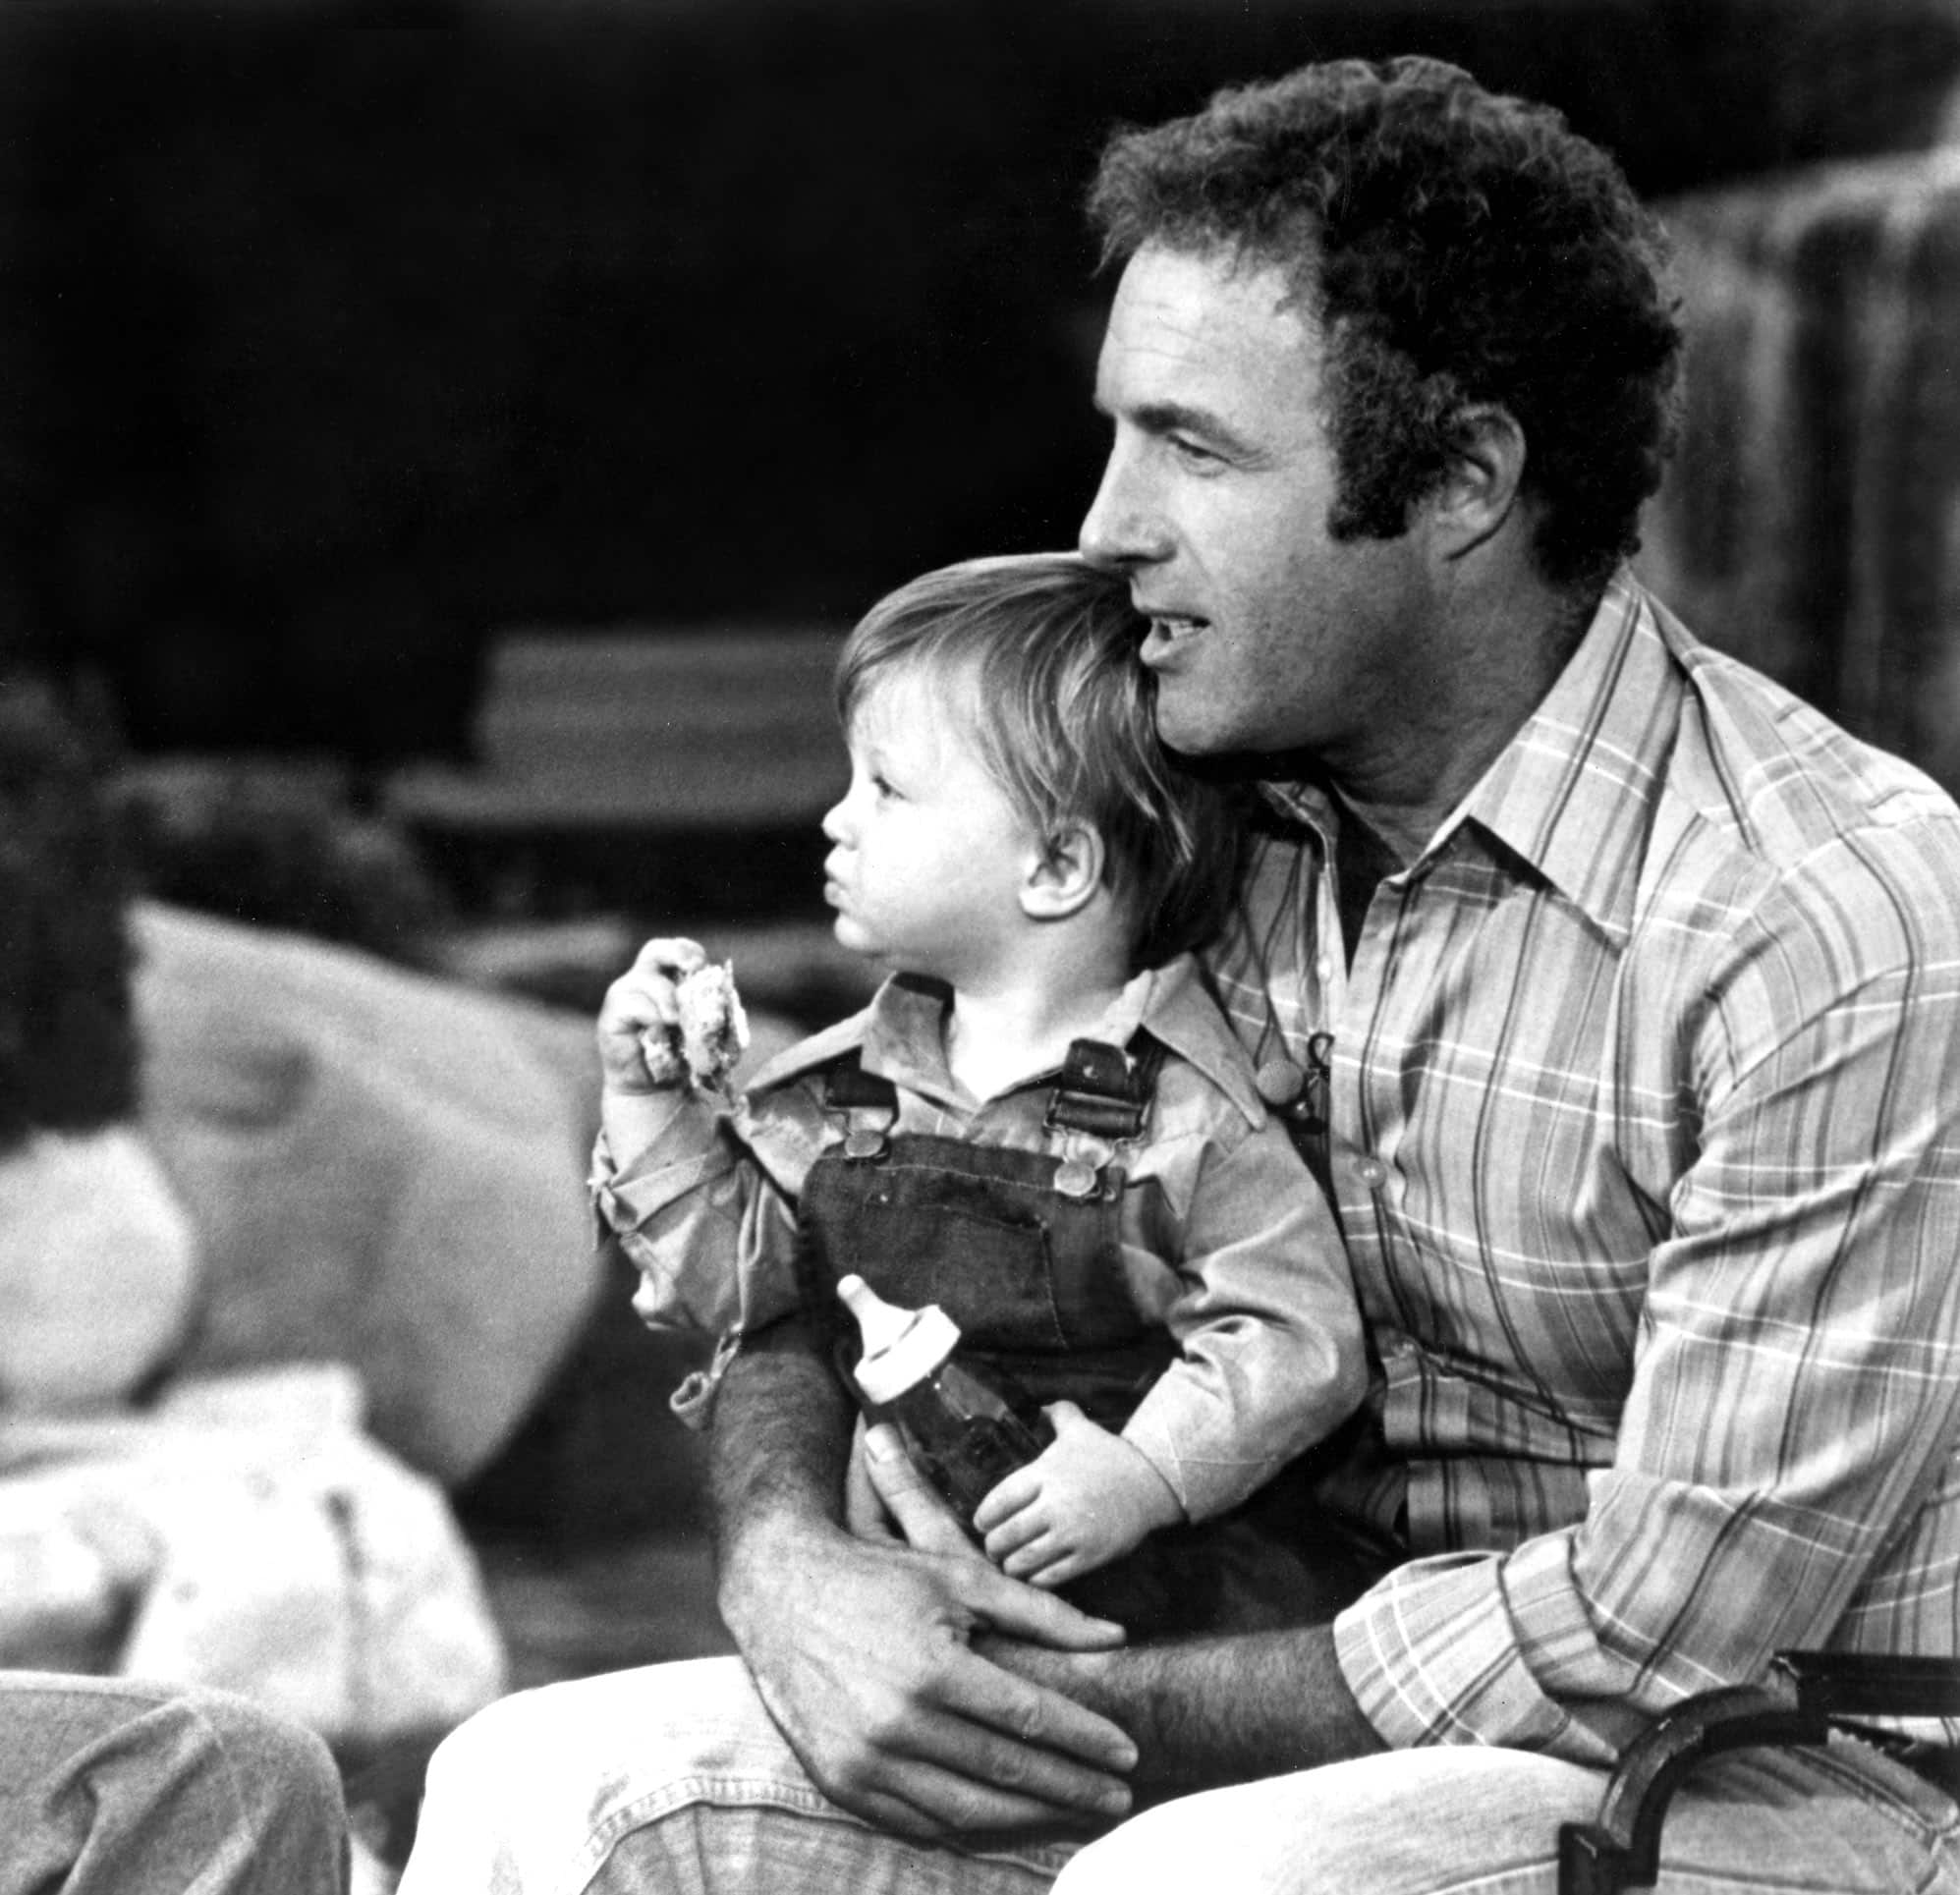 SCOTT CAAN with his dad JAMES CAAN, c. 1976-1977